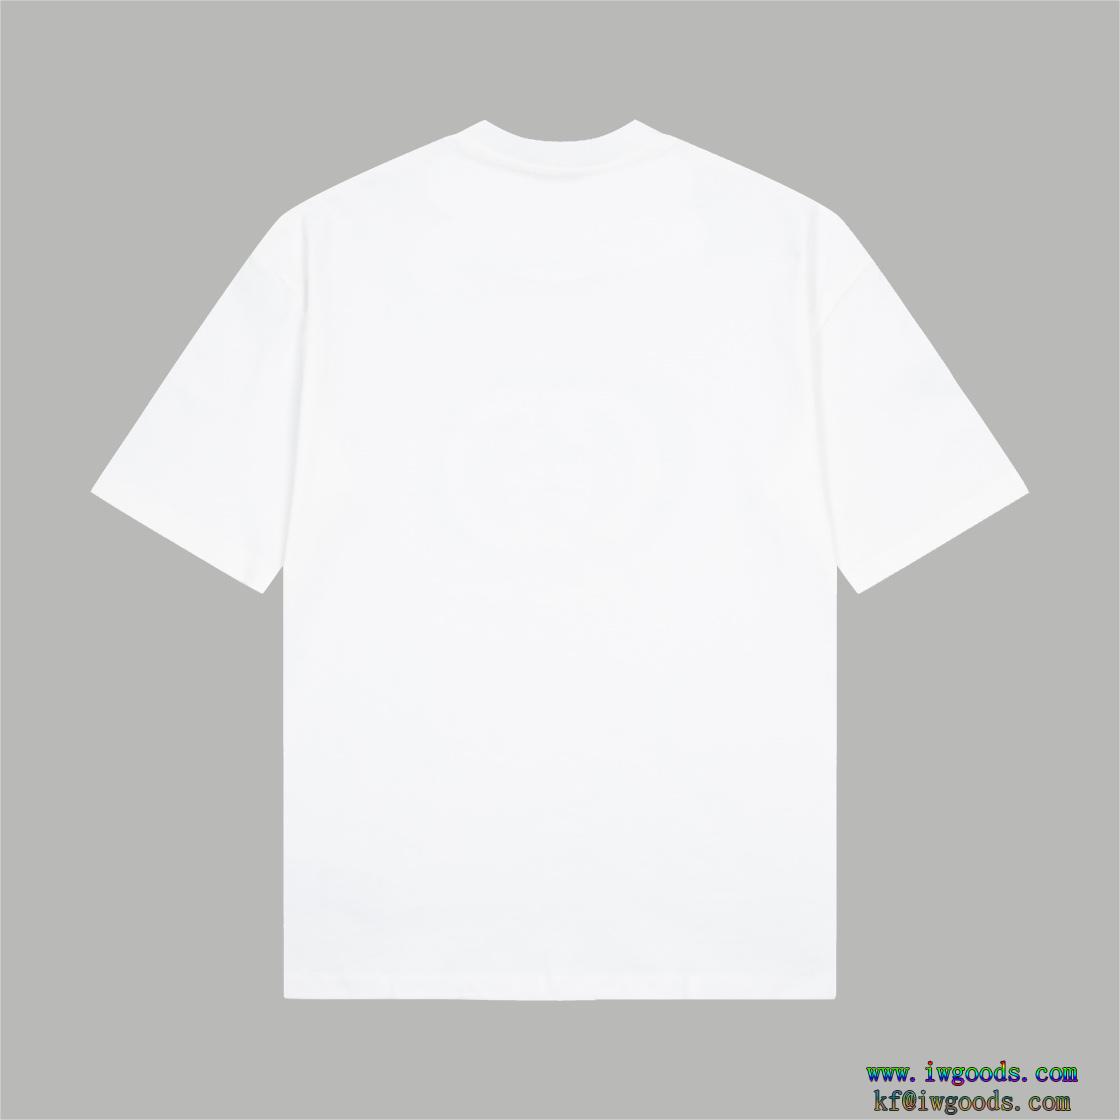 プラダPRADA半袖Tシャツコピー 品 販売,半袖Tシャツブランド スーパー コピー